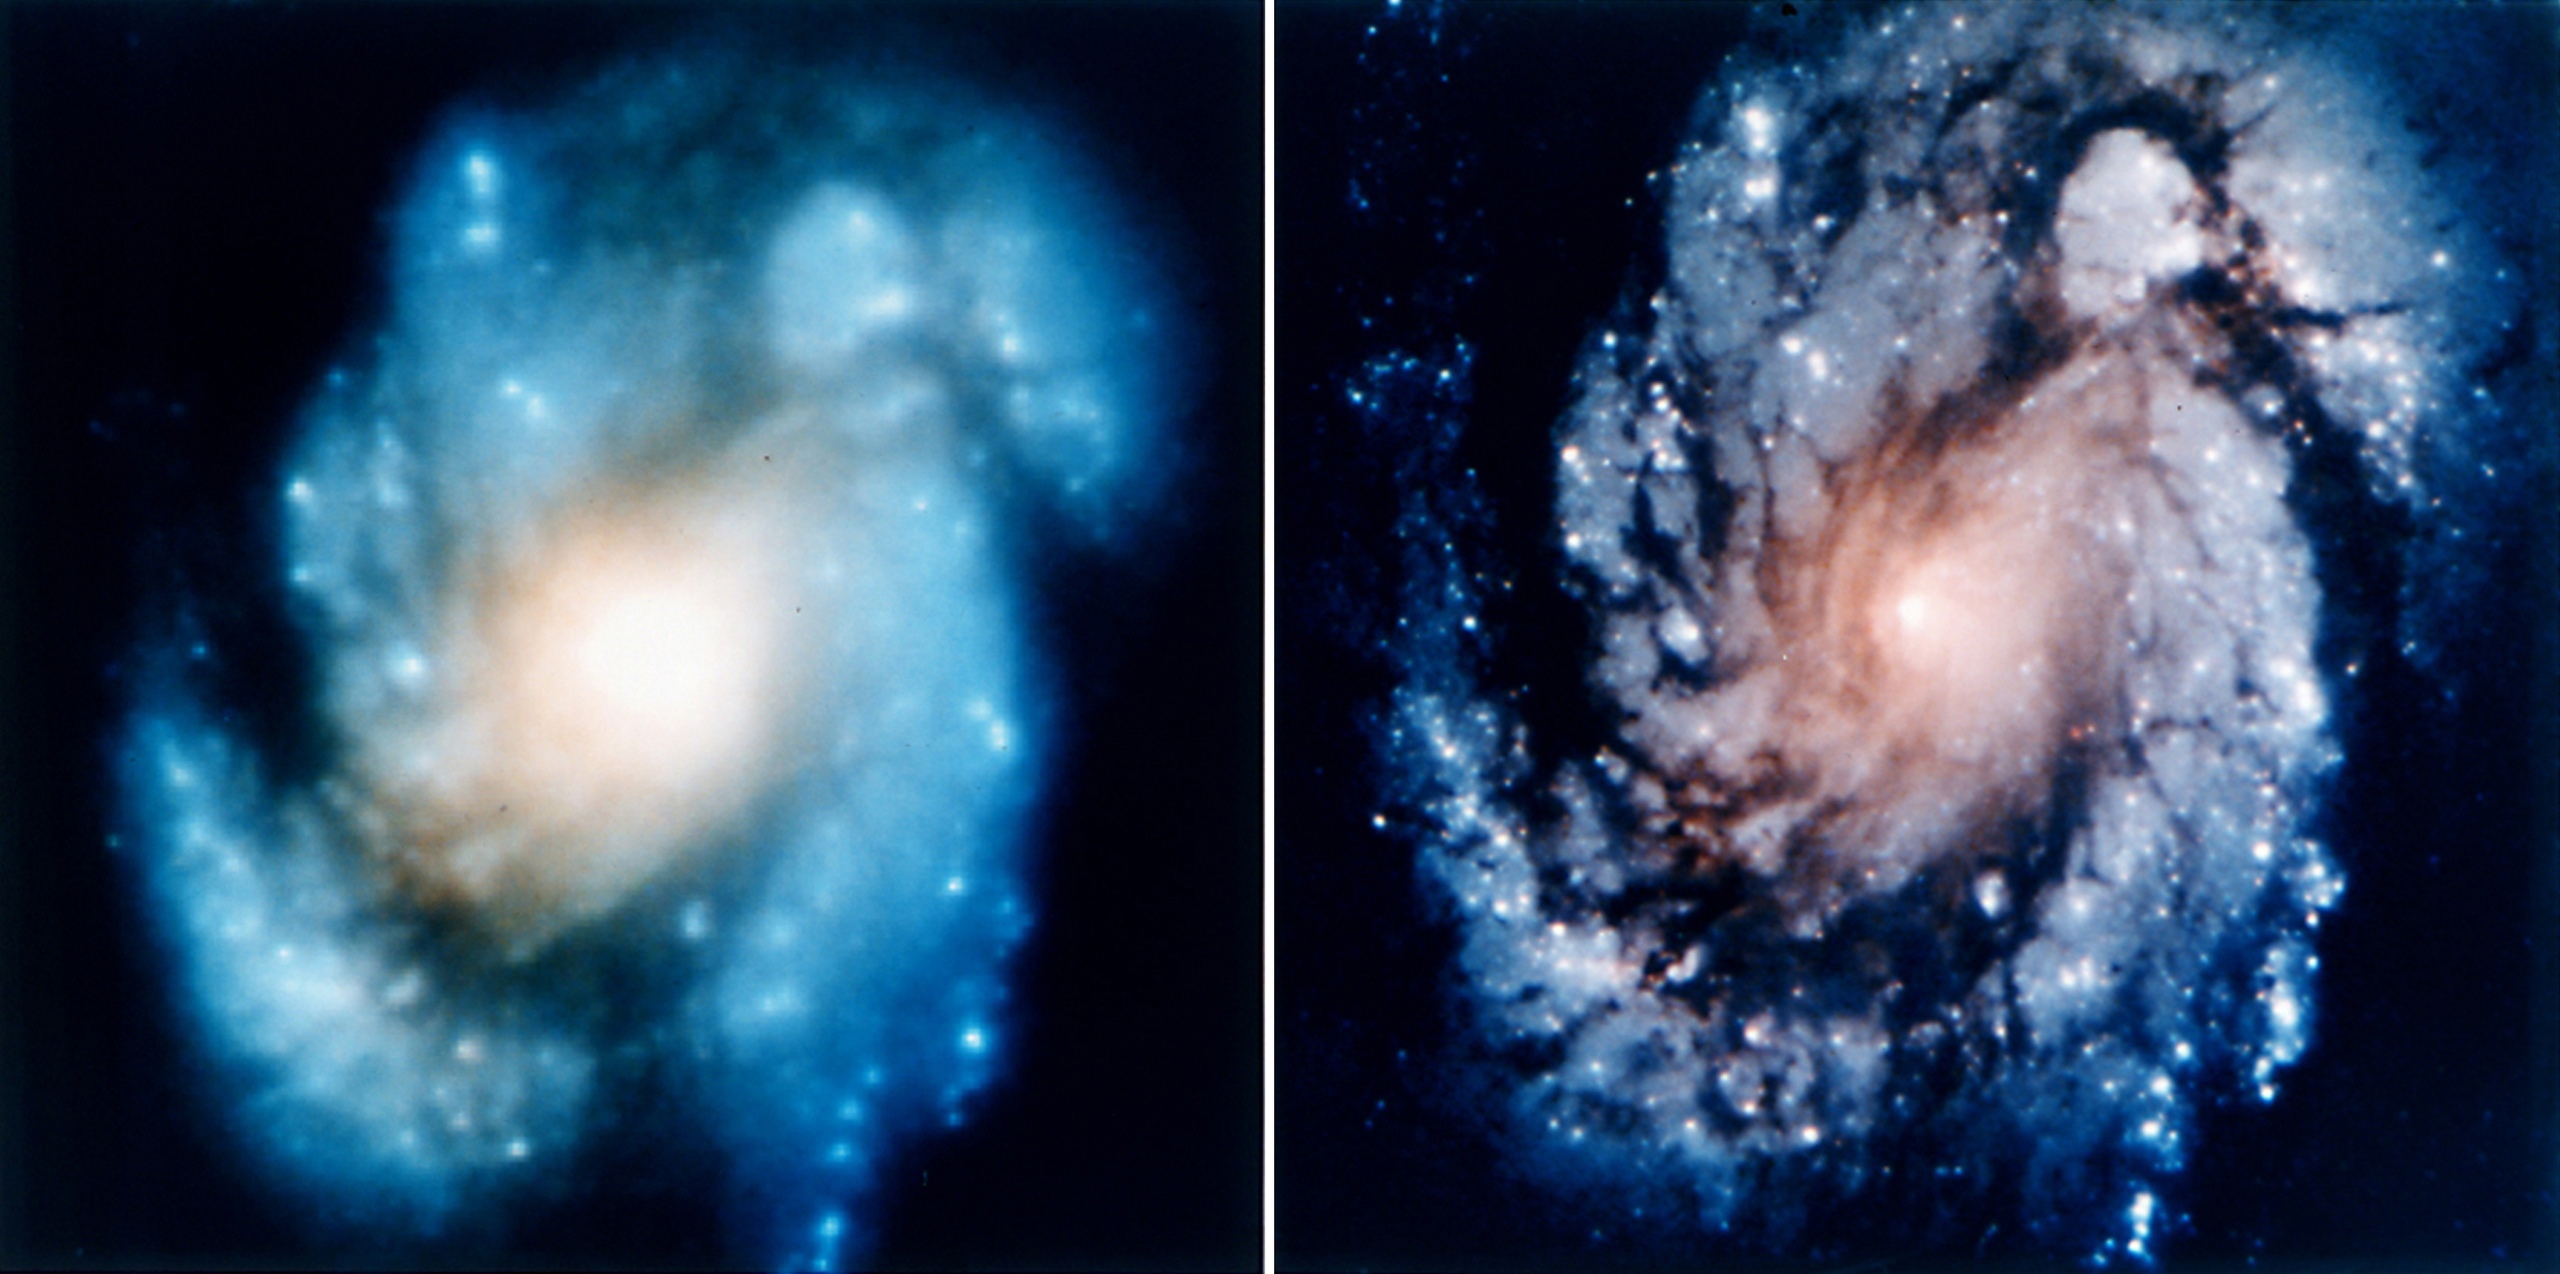 Сравнительное изображение ядра галактики M100 показывает значительное улучшение взора космического телескопа Хаббл на Вселенную после первой миссии Hubble Servicing Mission в декабре 1993 года